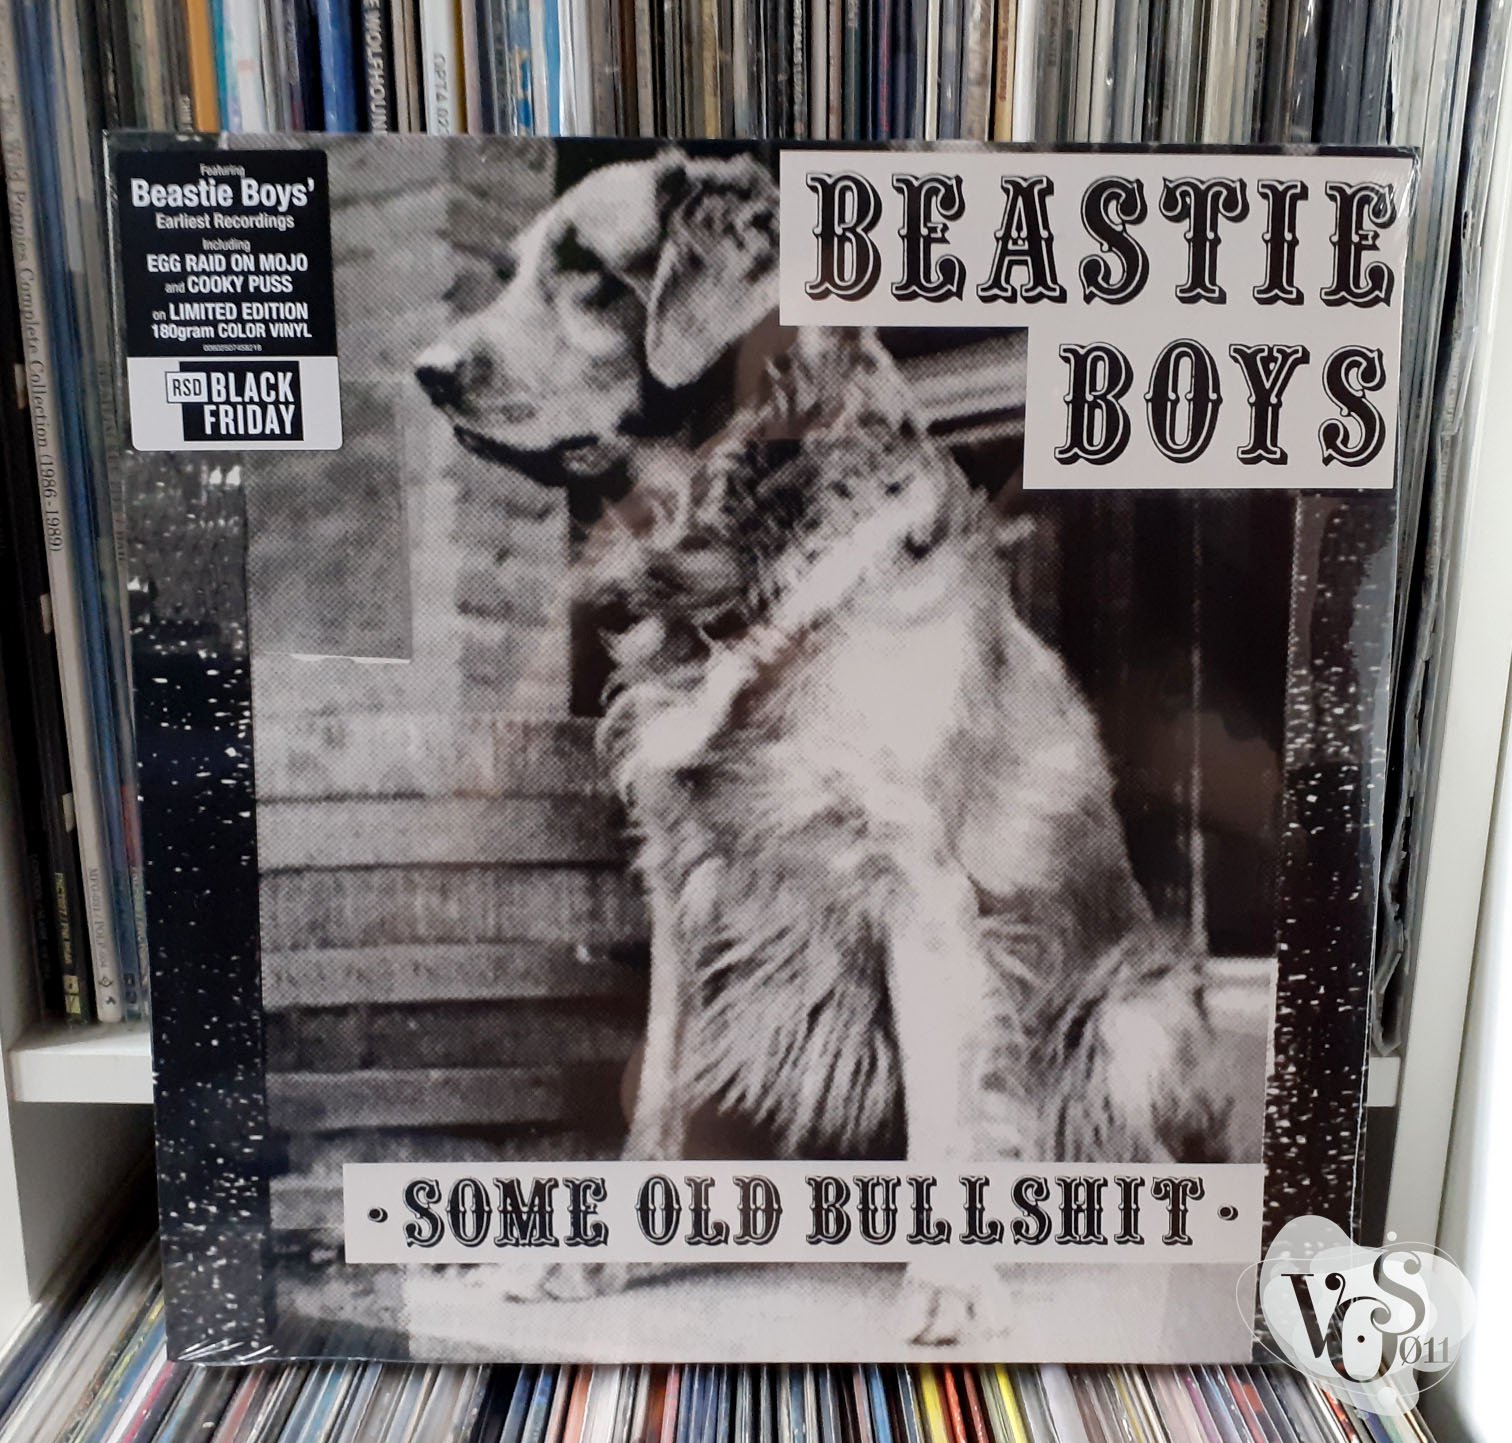 BEASTIE BOYS『SOME OLD BULLSHIT』LP レコード - 通販